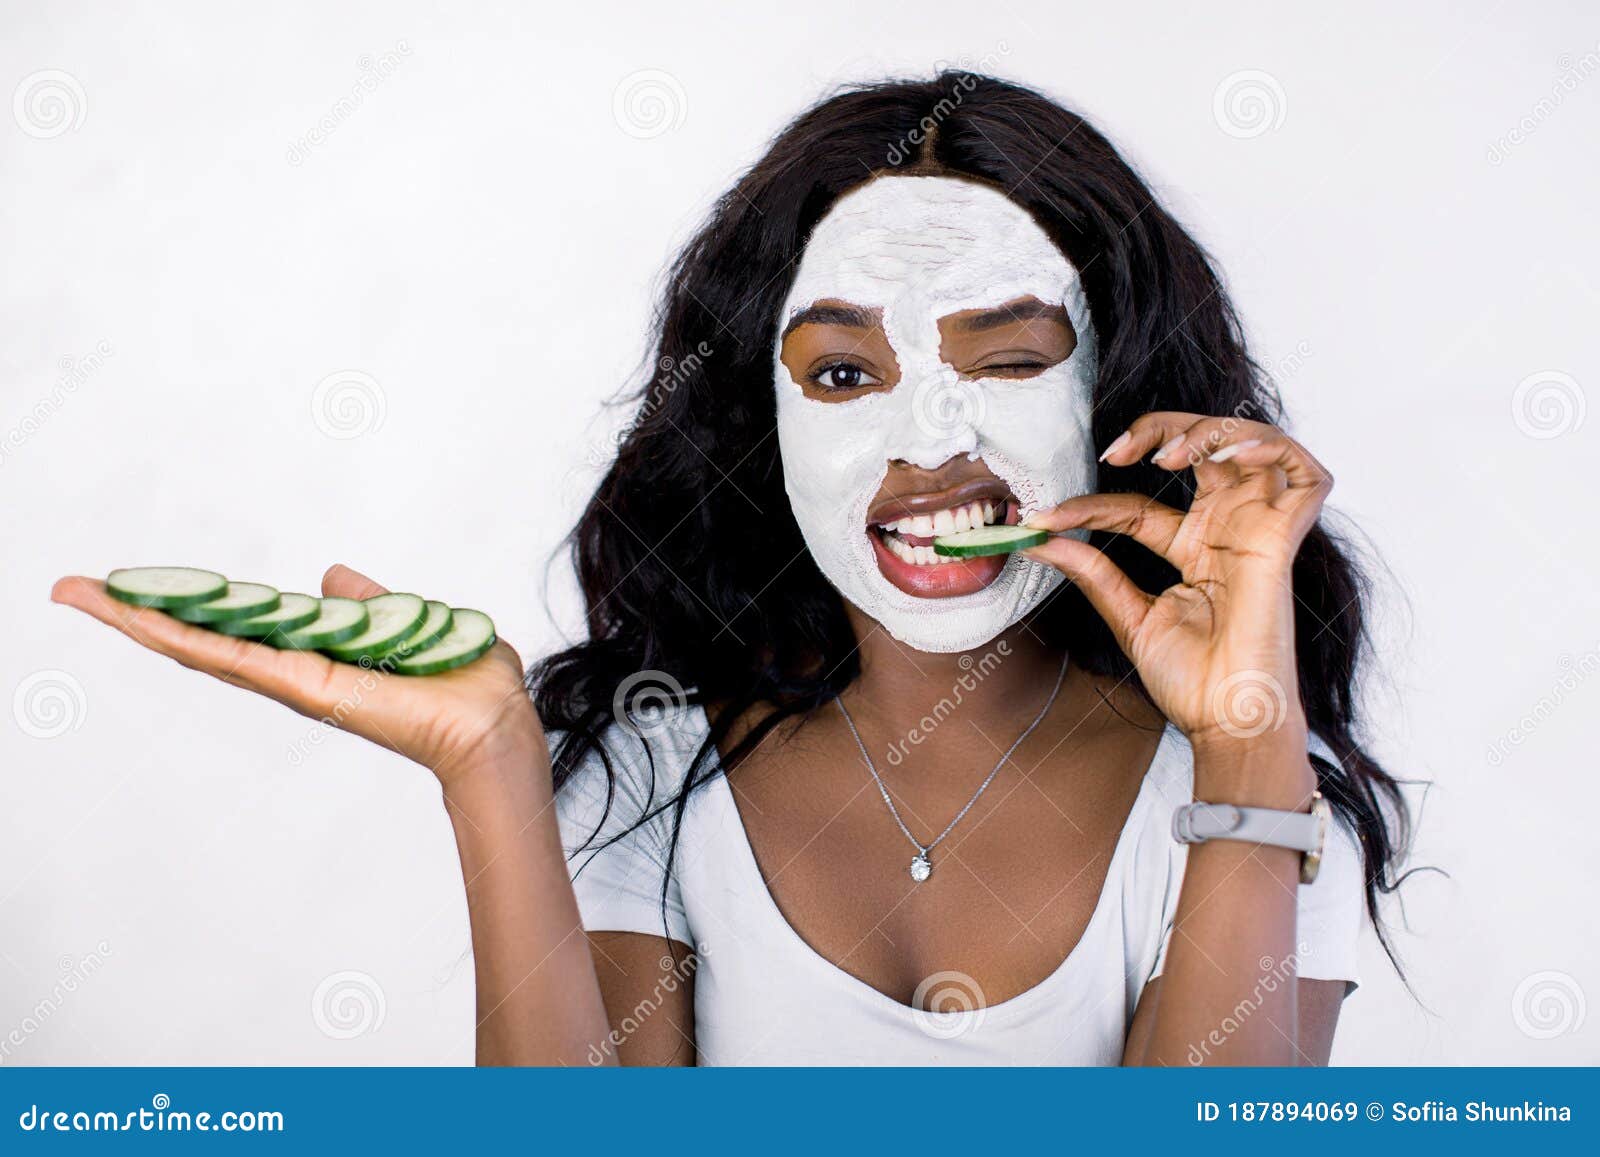 Sexy Woman Cucumber Stock Photos